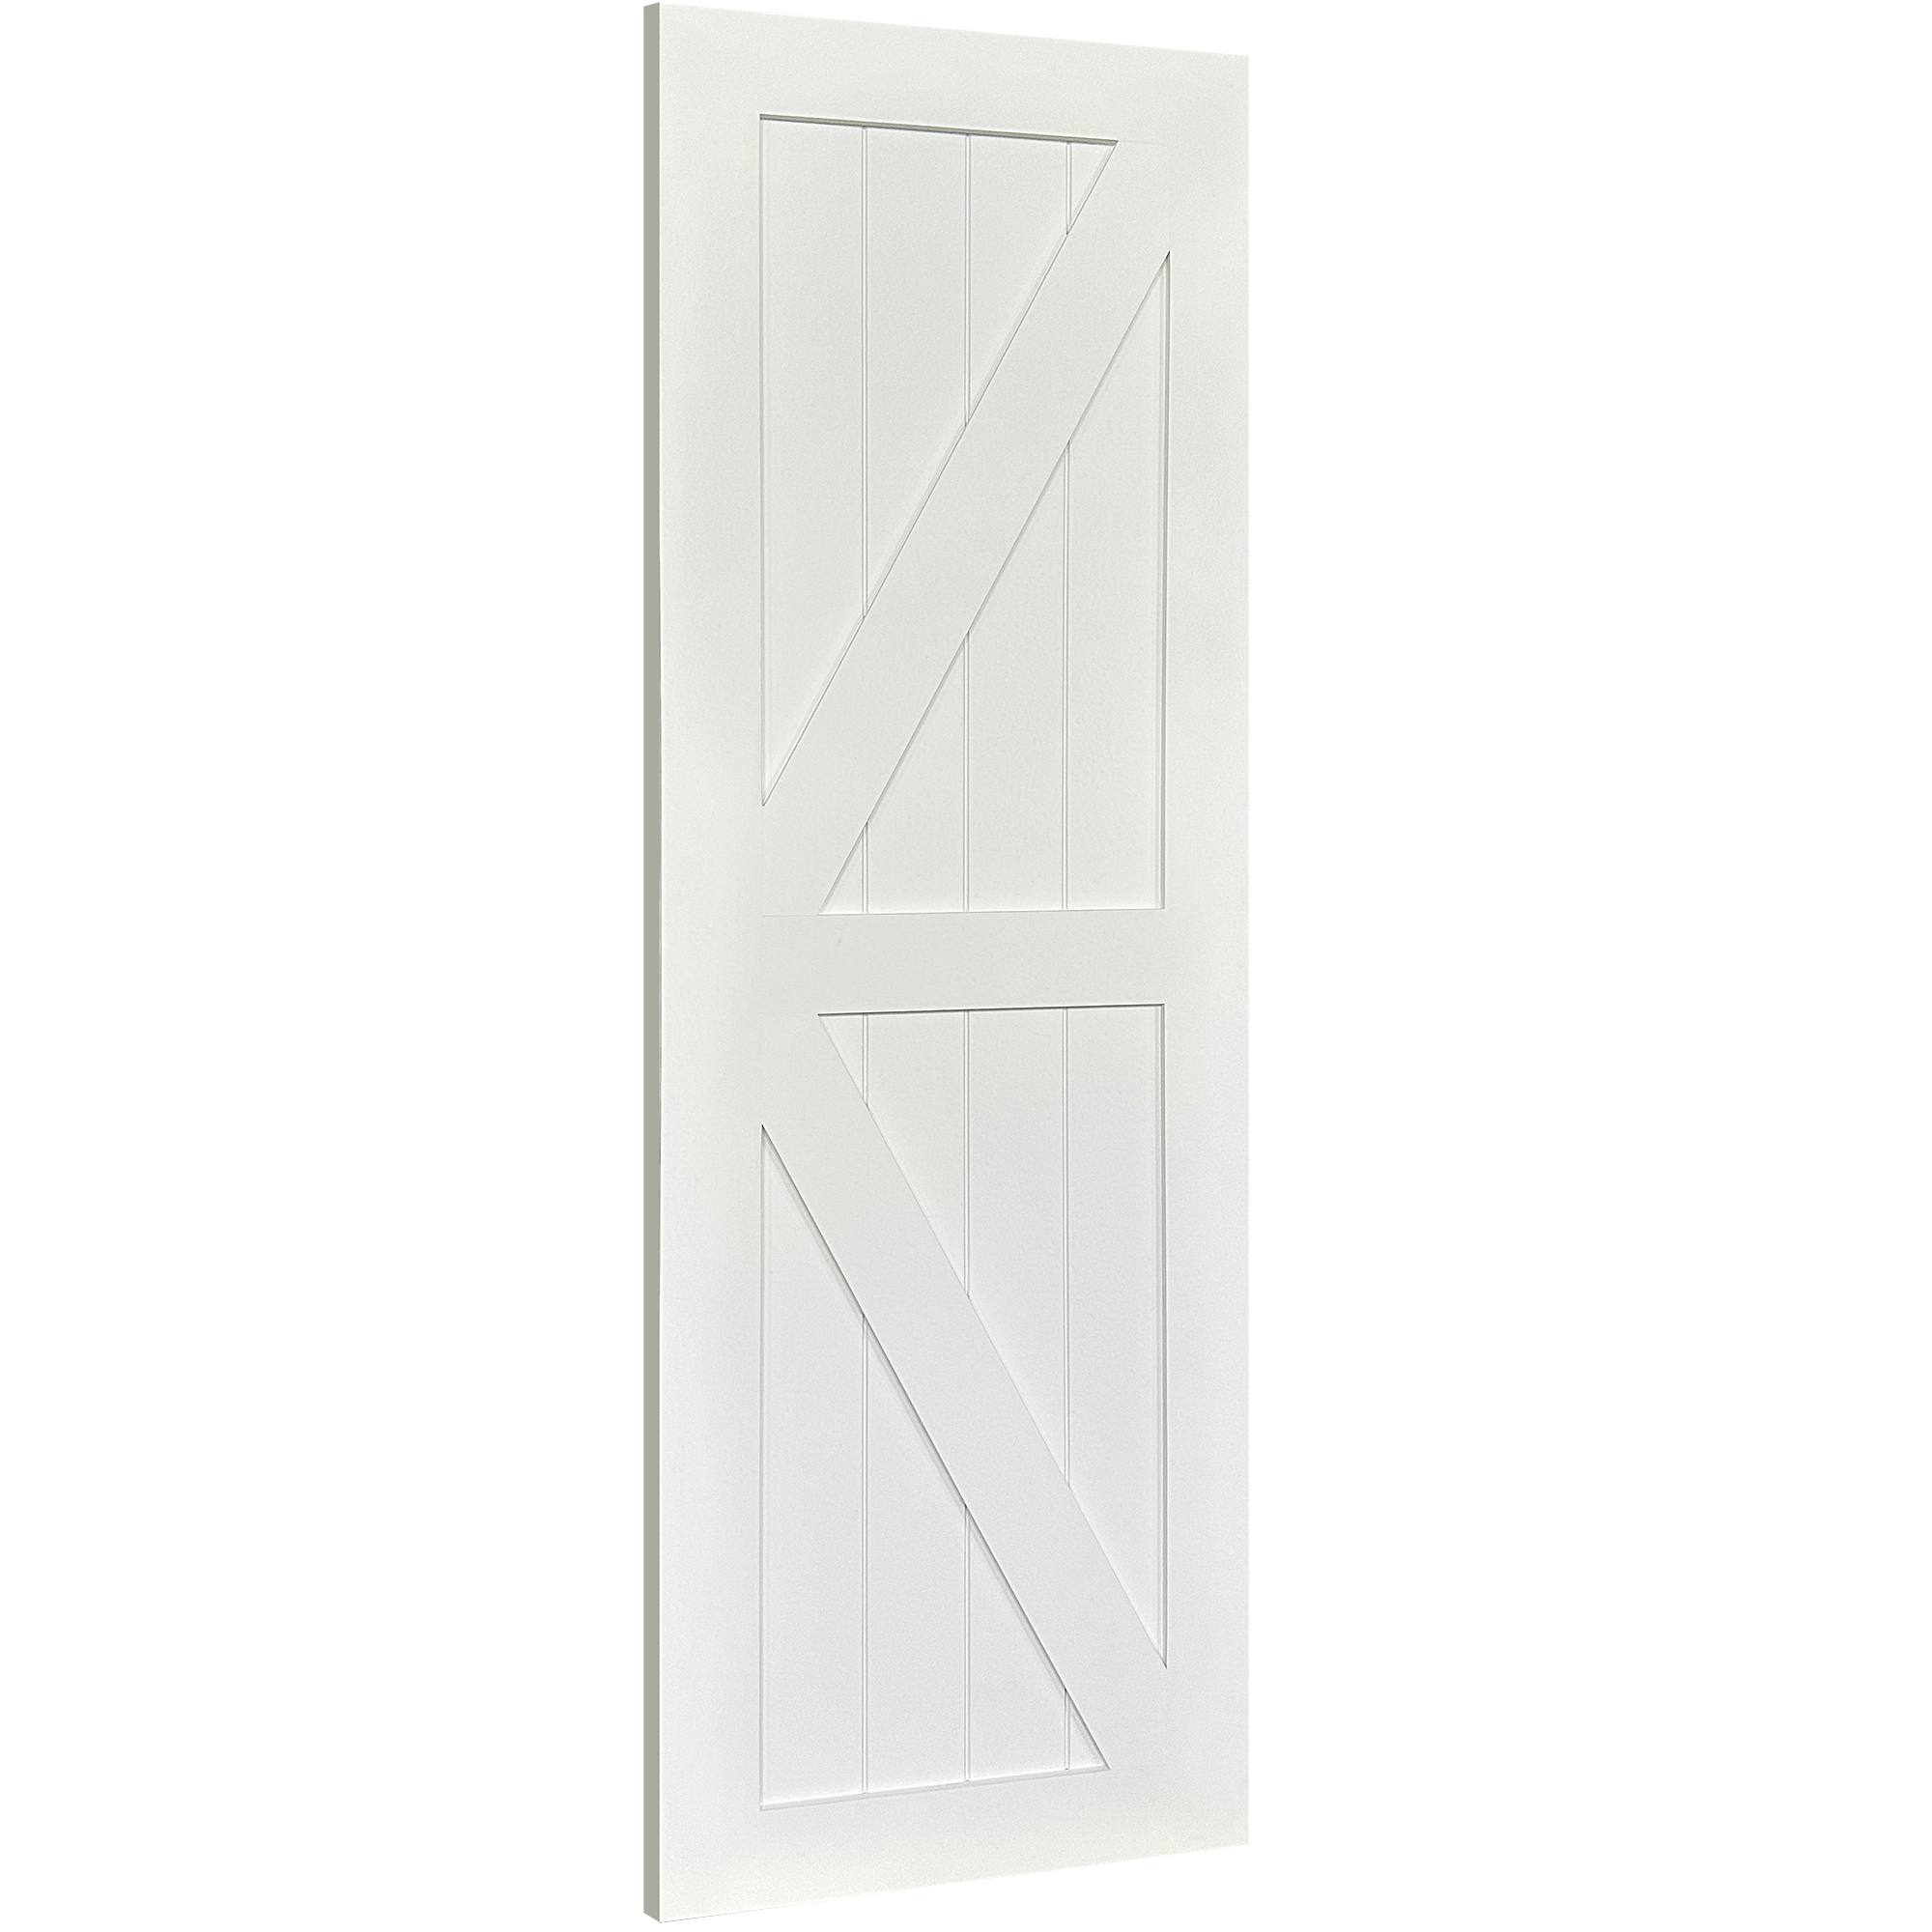 Get The K-Barn Door Without Hardware – Waydoor